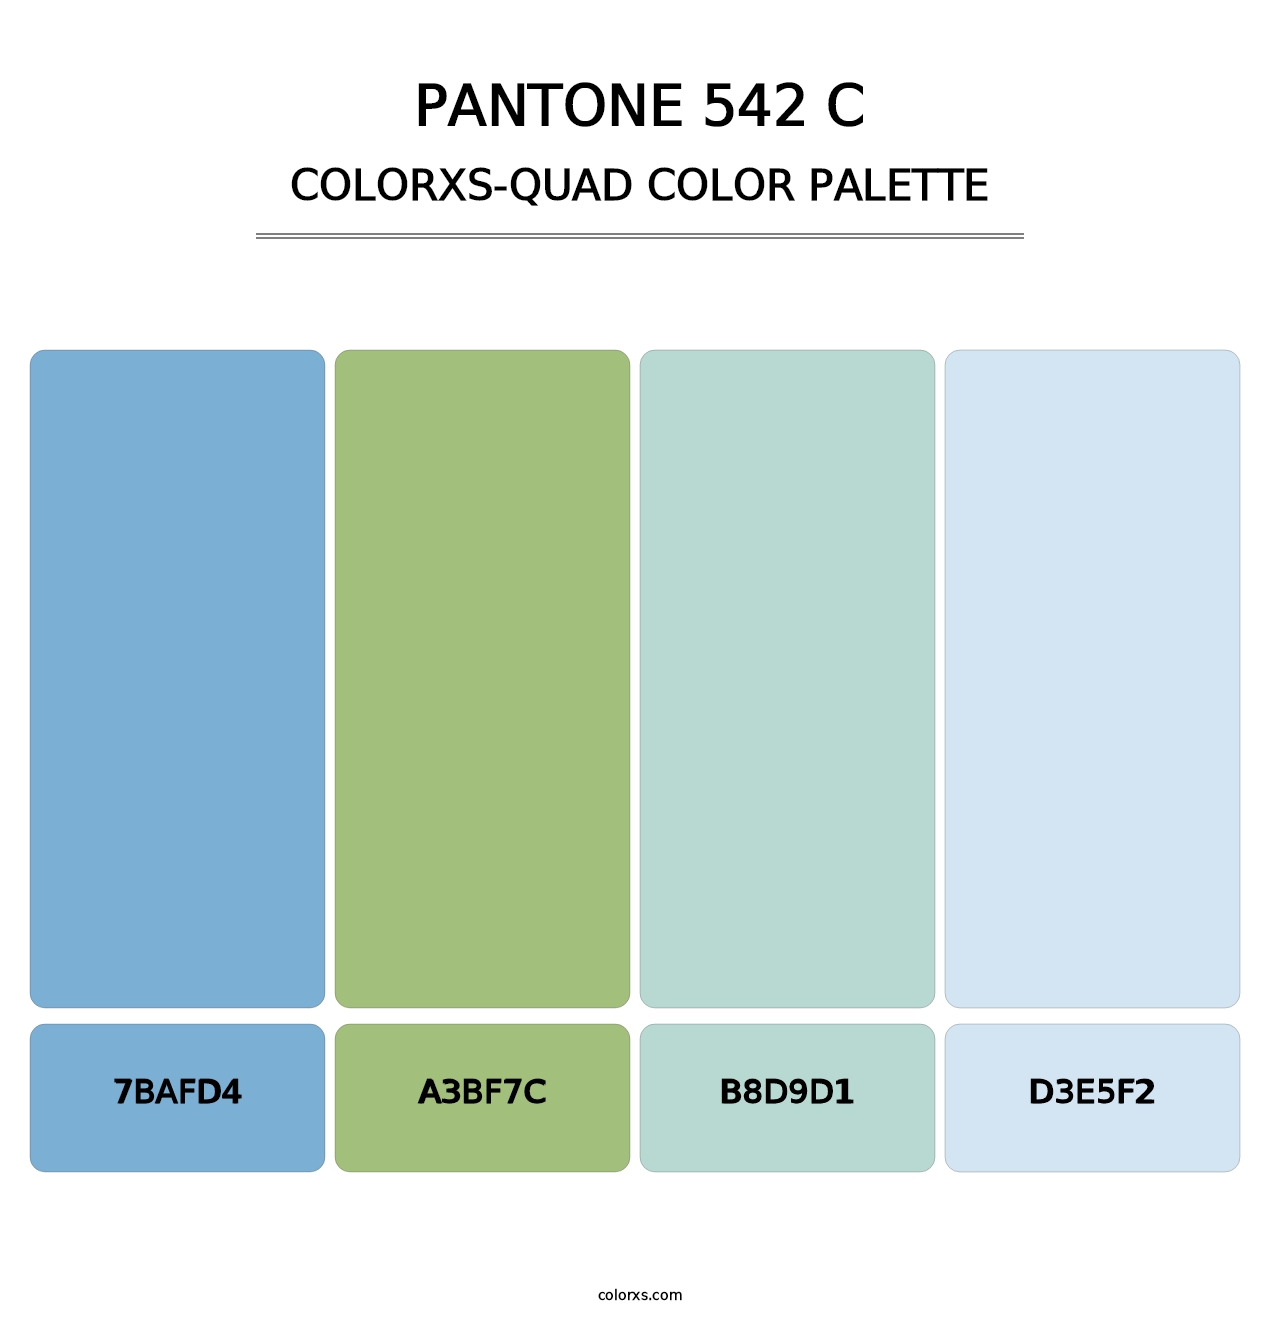 PANTONE 542 C - Colorxs Quad Palette